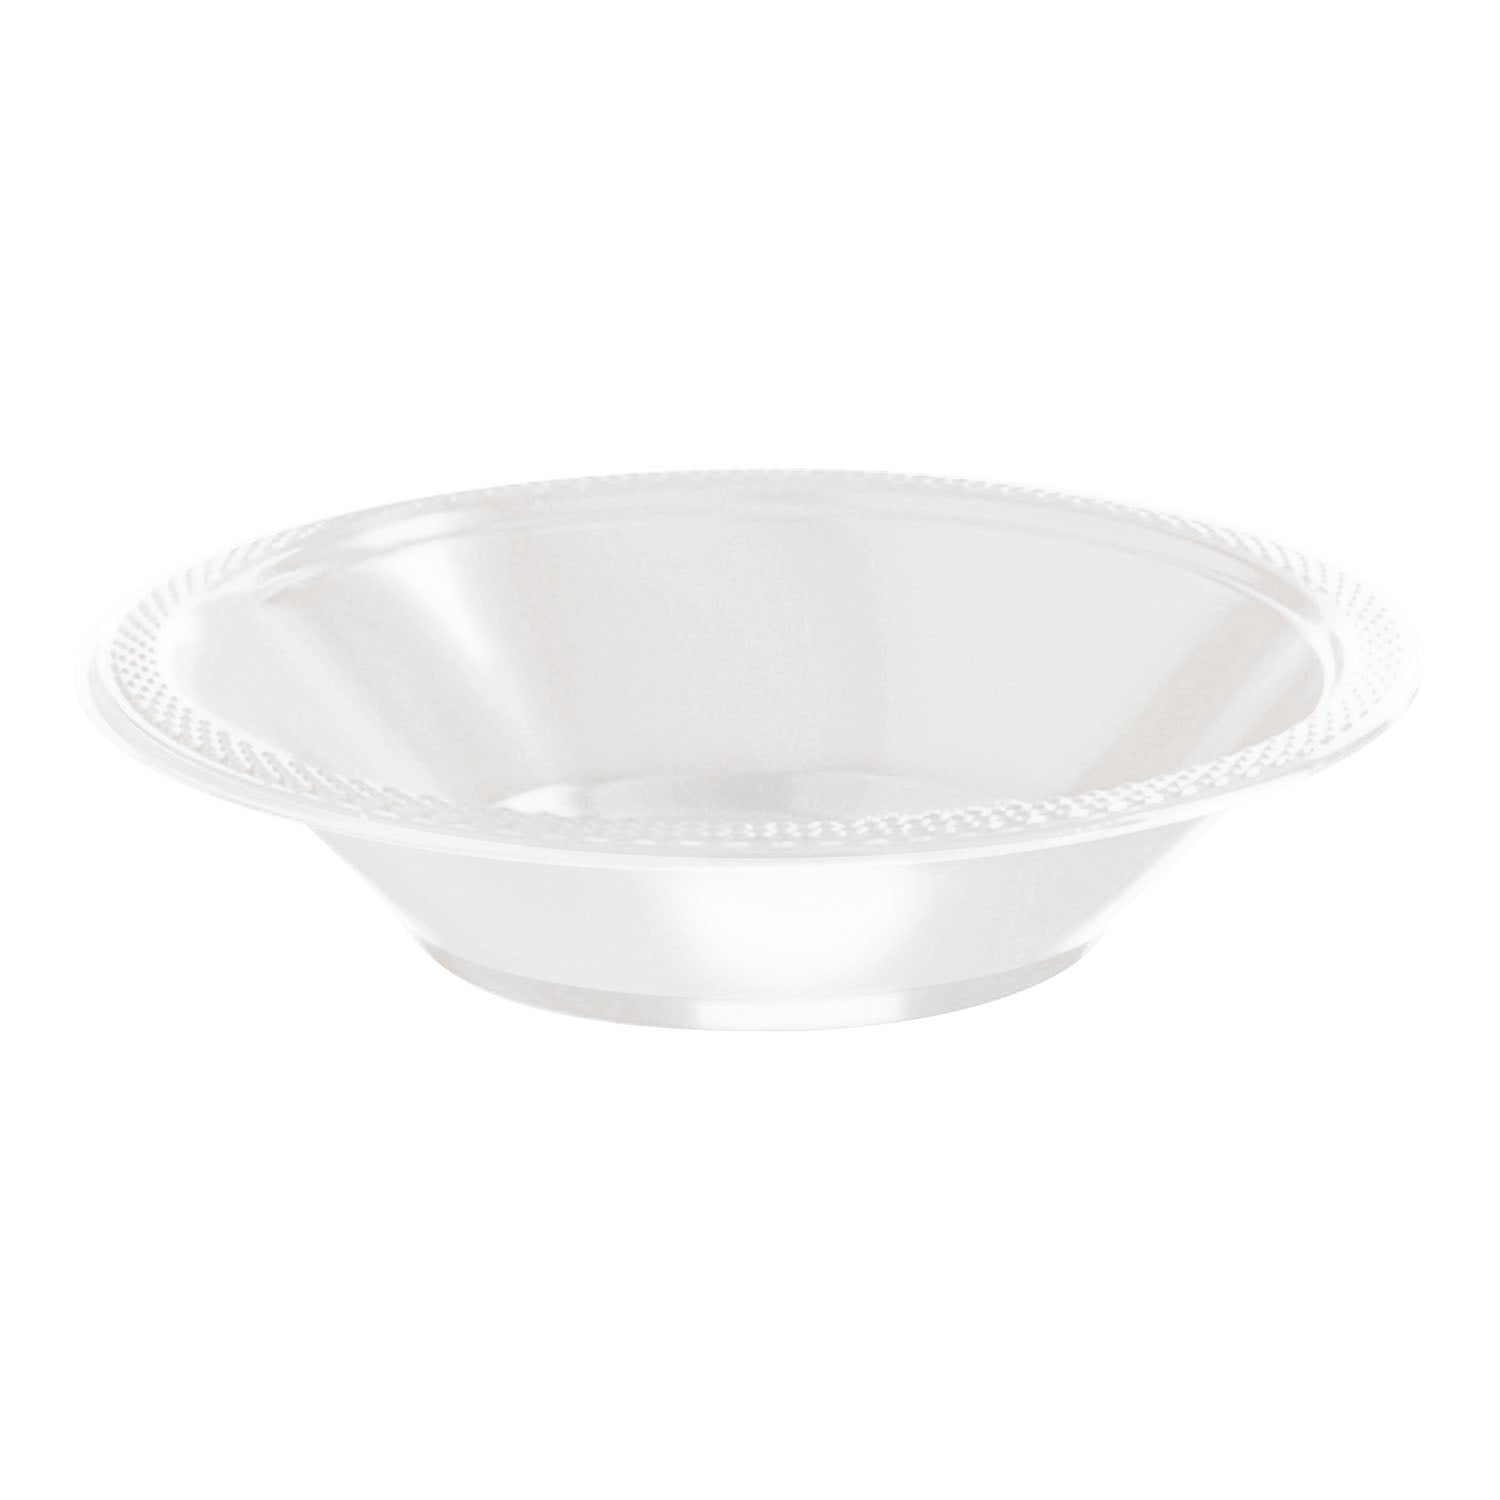 Plastic Bowls - Bright White